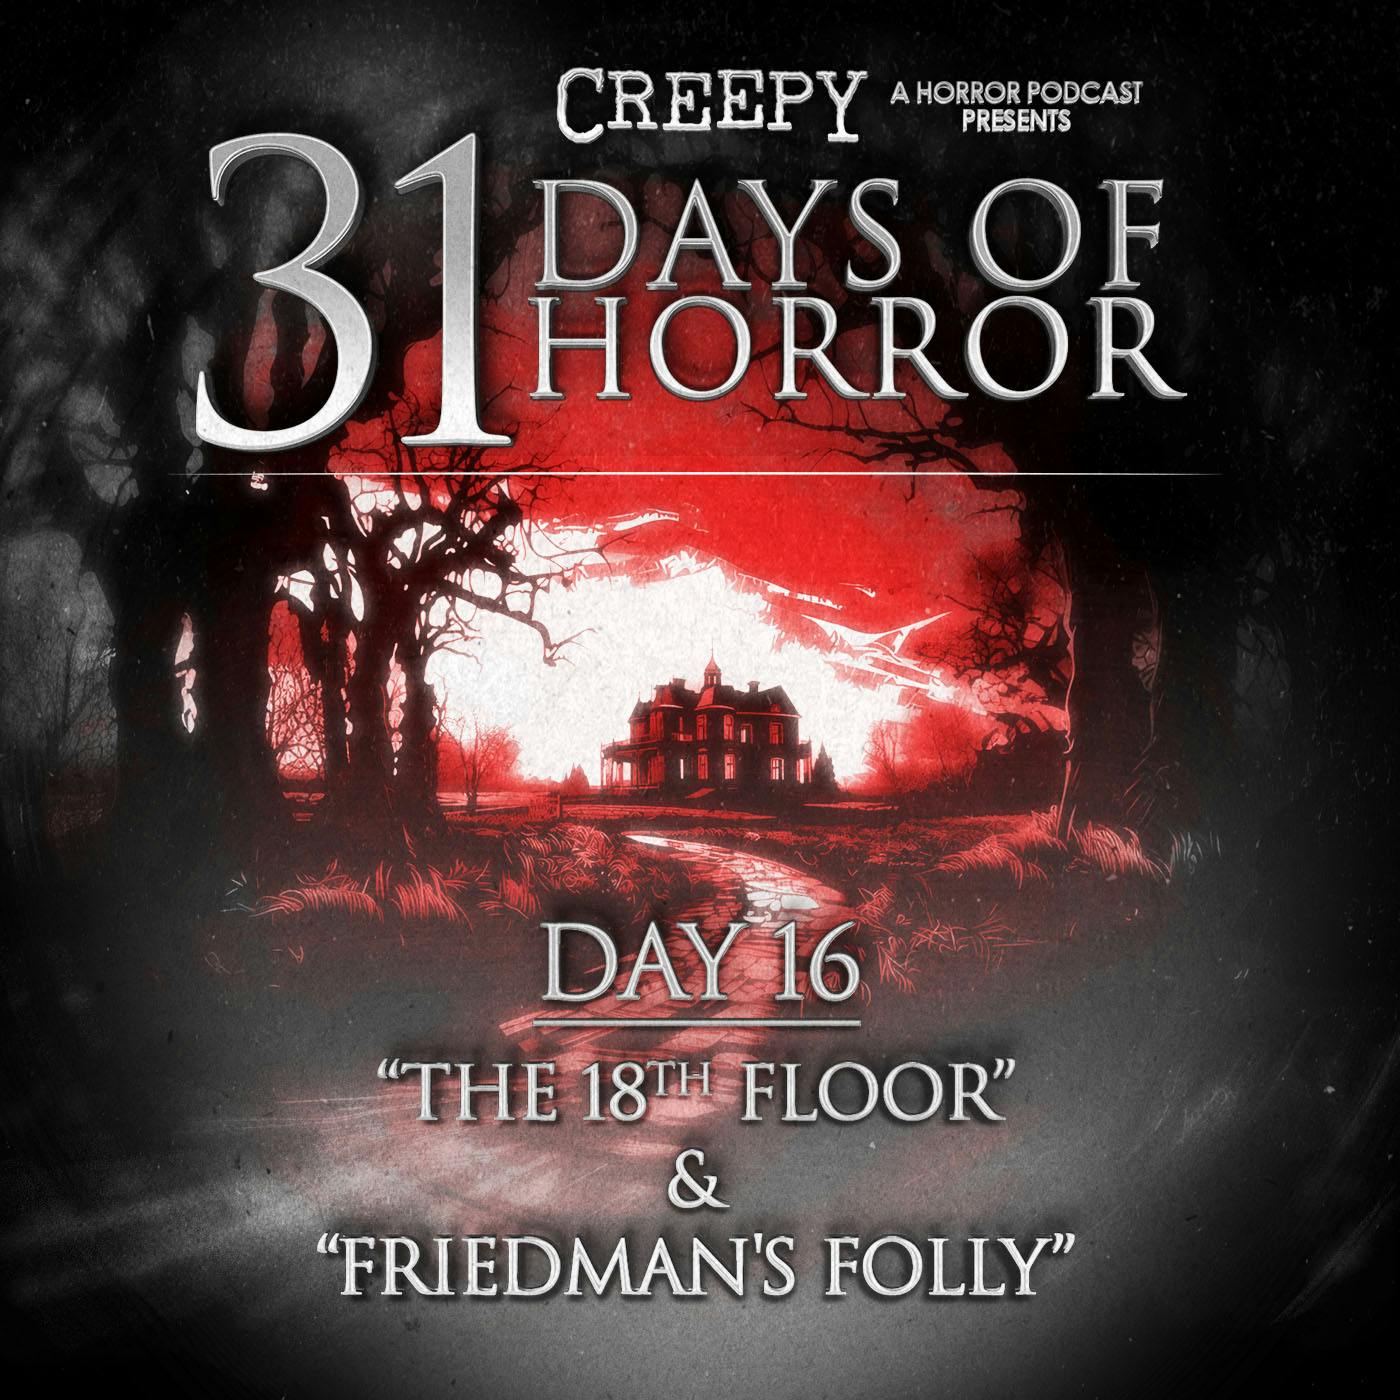 Day 16 - The 18th Floor & Friedman's Folly